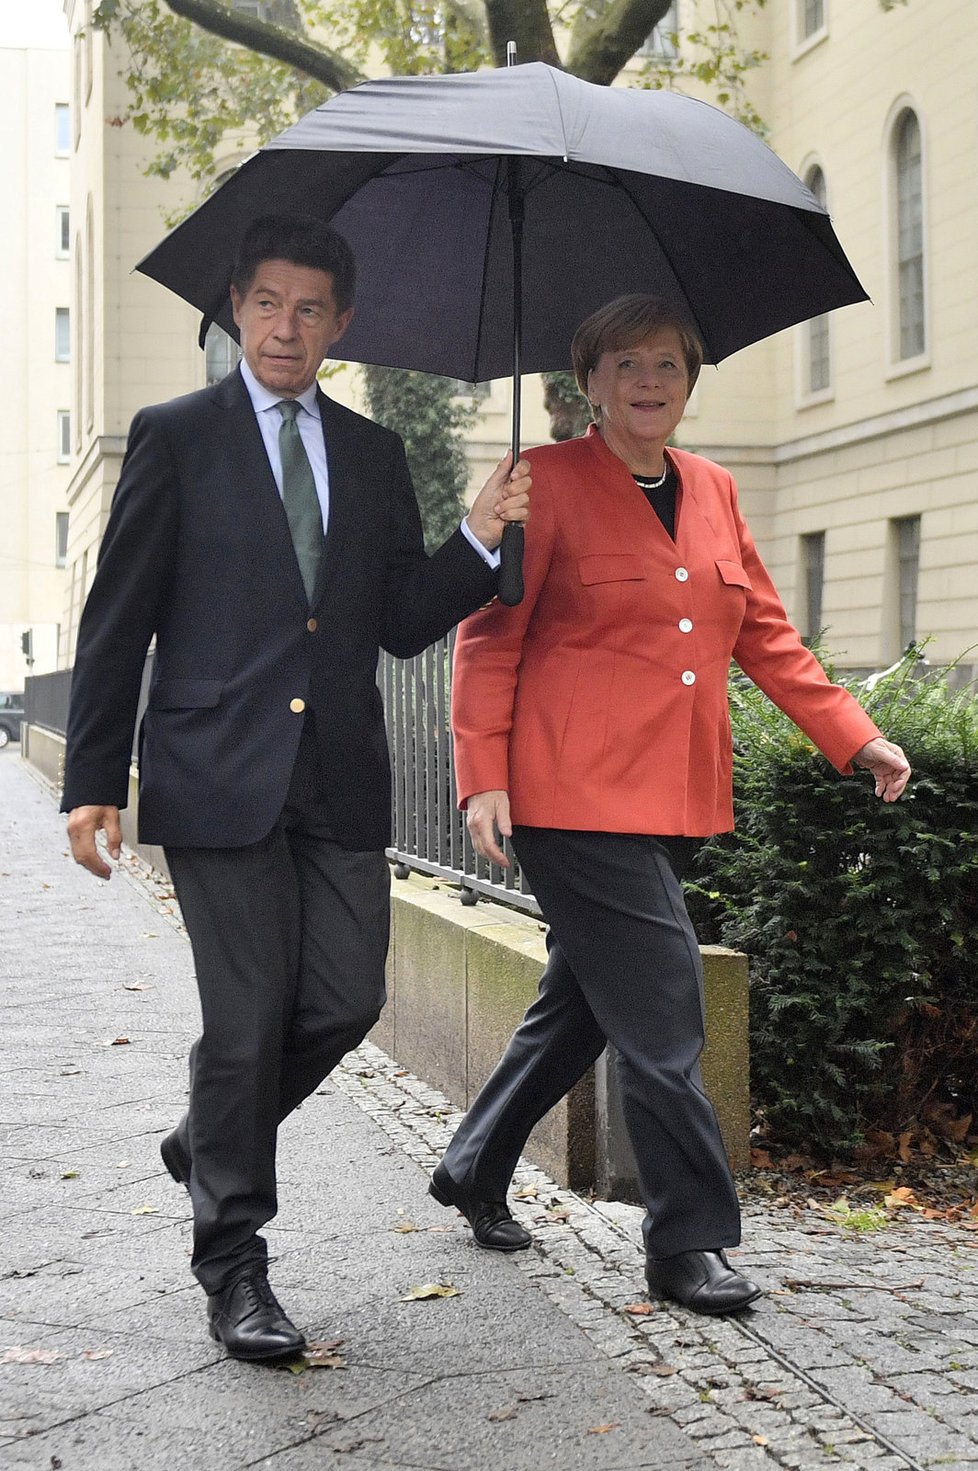 Německé volby: Kancléřku Merkelovou doprovodil do volební síně její manžel Joachim Sauer